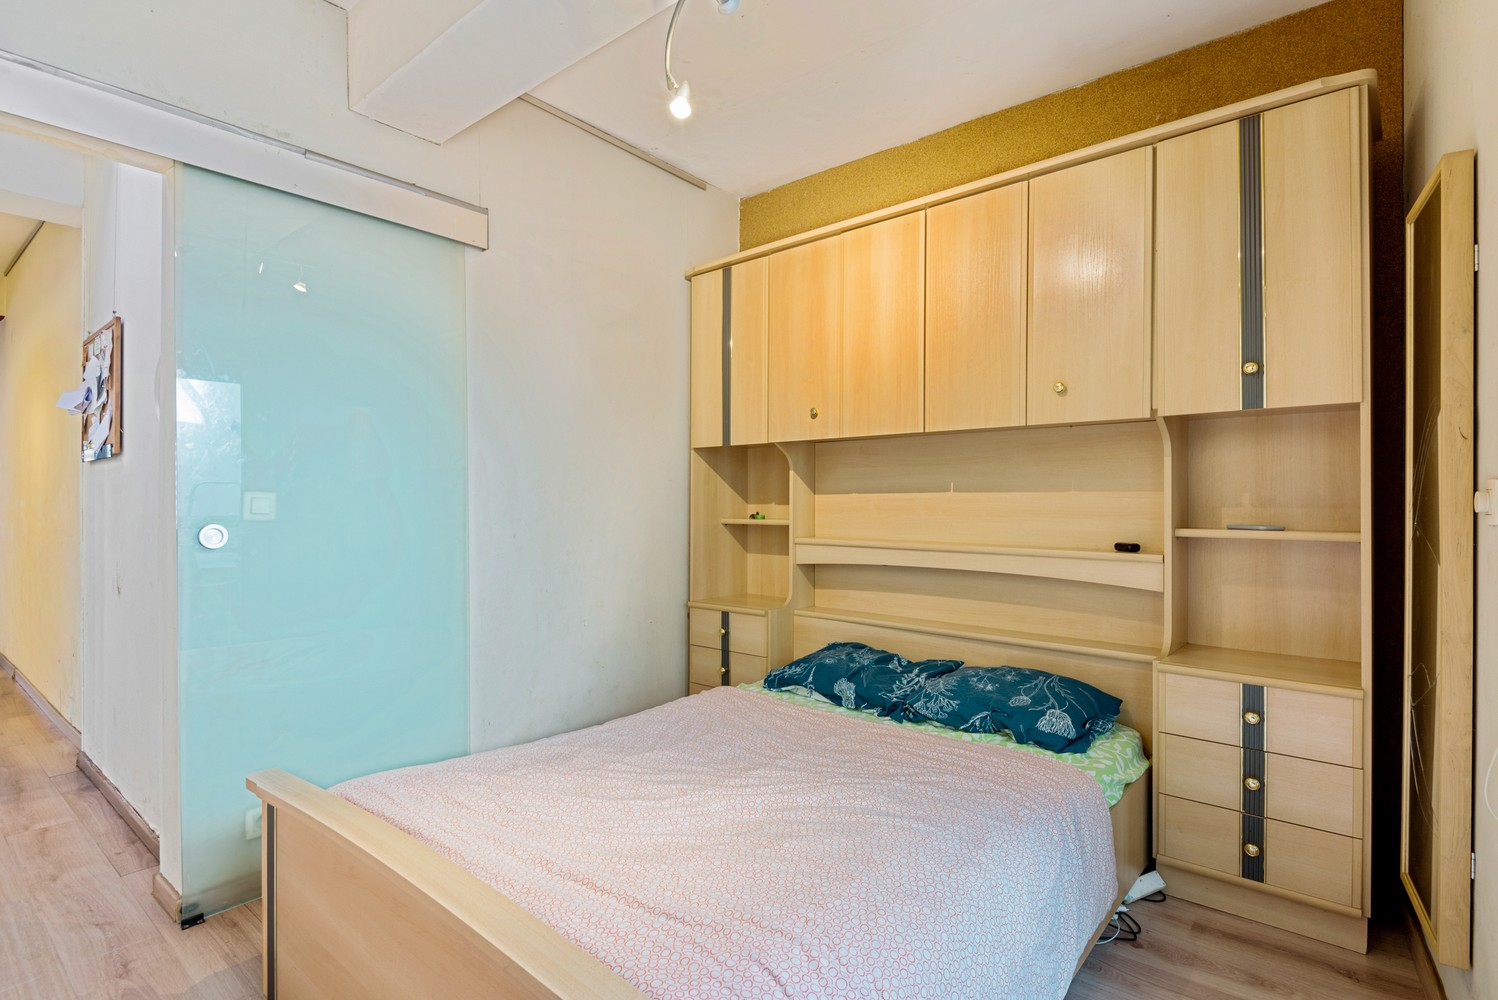 Gelijkvloers appartement met 1 slaapkamer te koop in Mechelen afbeelding 8